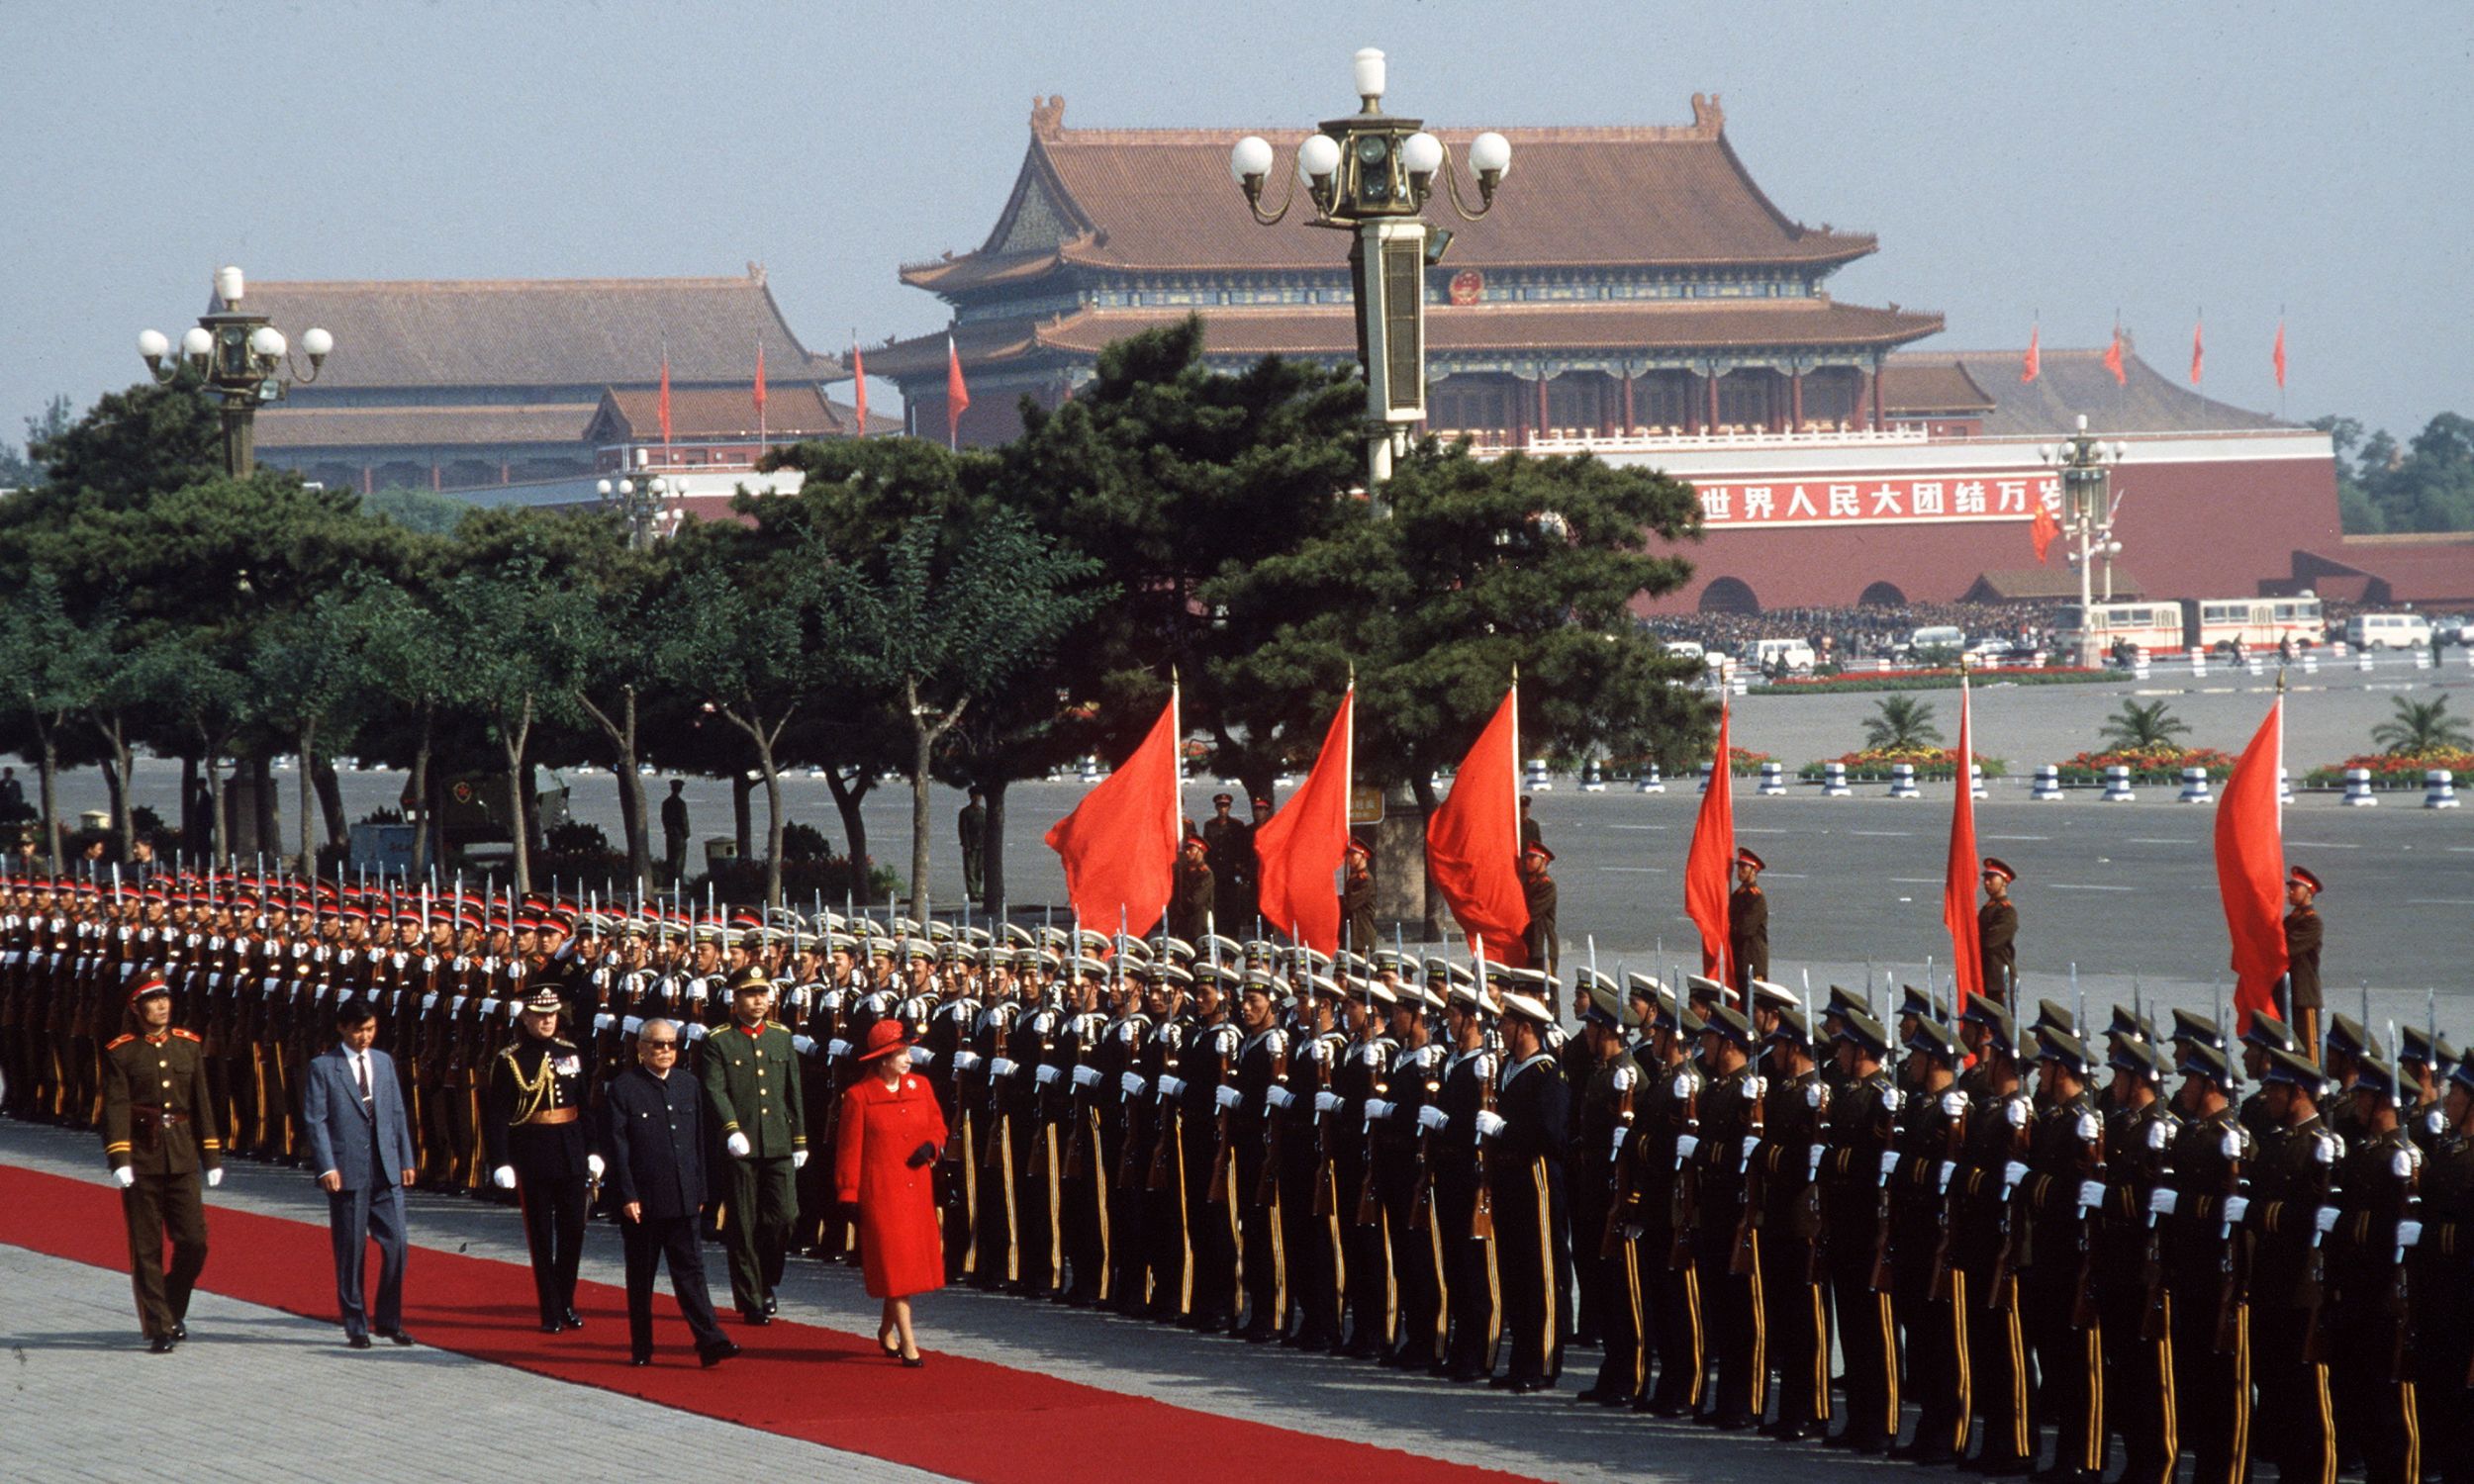 Królowa do Pekinu przyleciała wieczorem 12 września 1986 roku. Ceremonia powitania odbyła się następnego dnia przed gmachem parlamentu przy placu Tian’anmen.Fot.  Tim Graham Photo Library via Getty Images